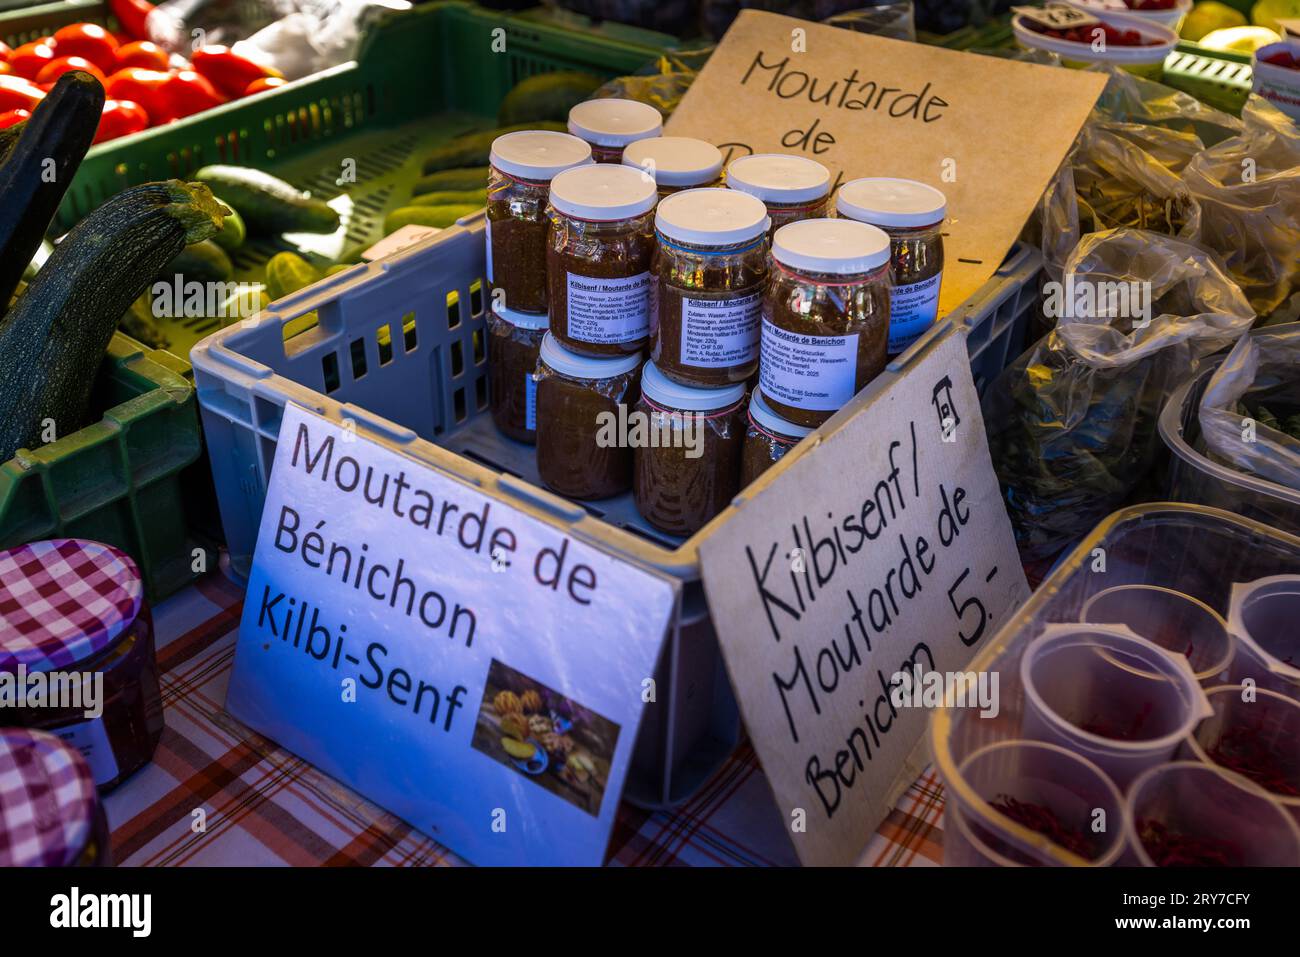 La senape Kilbi o Moutarde de Bénichon fa parte del menu Kilbi. Il festival di Bénichon, o Kilbi in tedesco, viene celebrato tra la metà di settembre e l'inizio di ottobre nel cantone di Friburgo. Il menu Bénichon, con un massimo di sette portate, combina molti prodotti tradizionali della regione di Friburgo. Mercato settimanale nella città di Friburgo nell'omonimo cantone svizzero. Friburgo - Friburgo, Svizzera Foto Stock